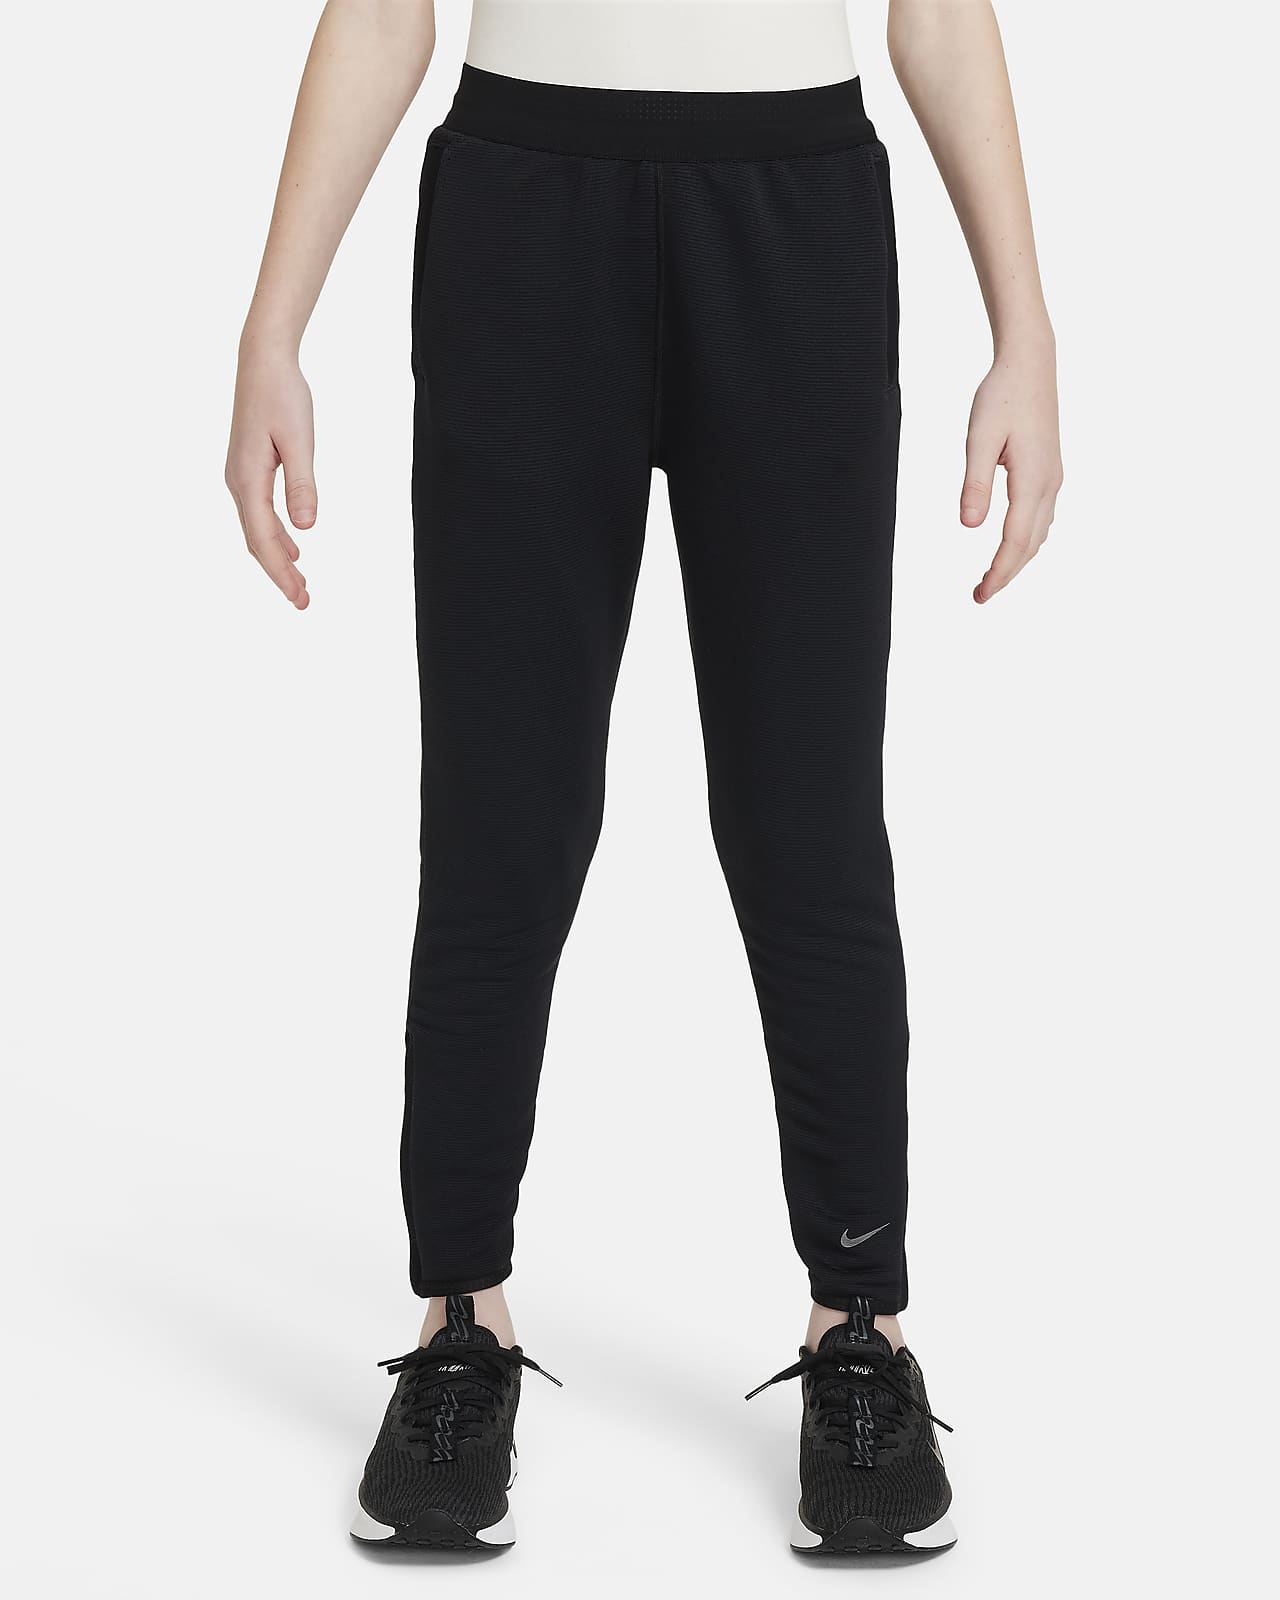 Nike Multi Tech EasyOn Pantalons d'entrenament Therma-FIT ADV - Nen/a